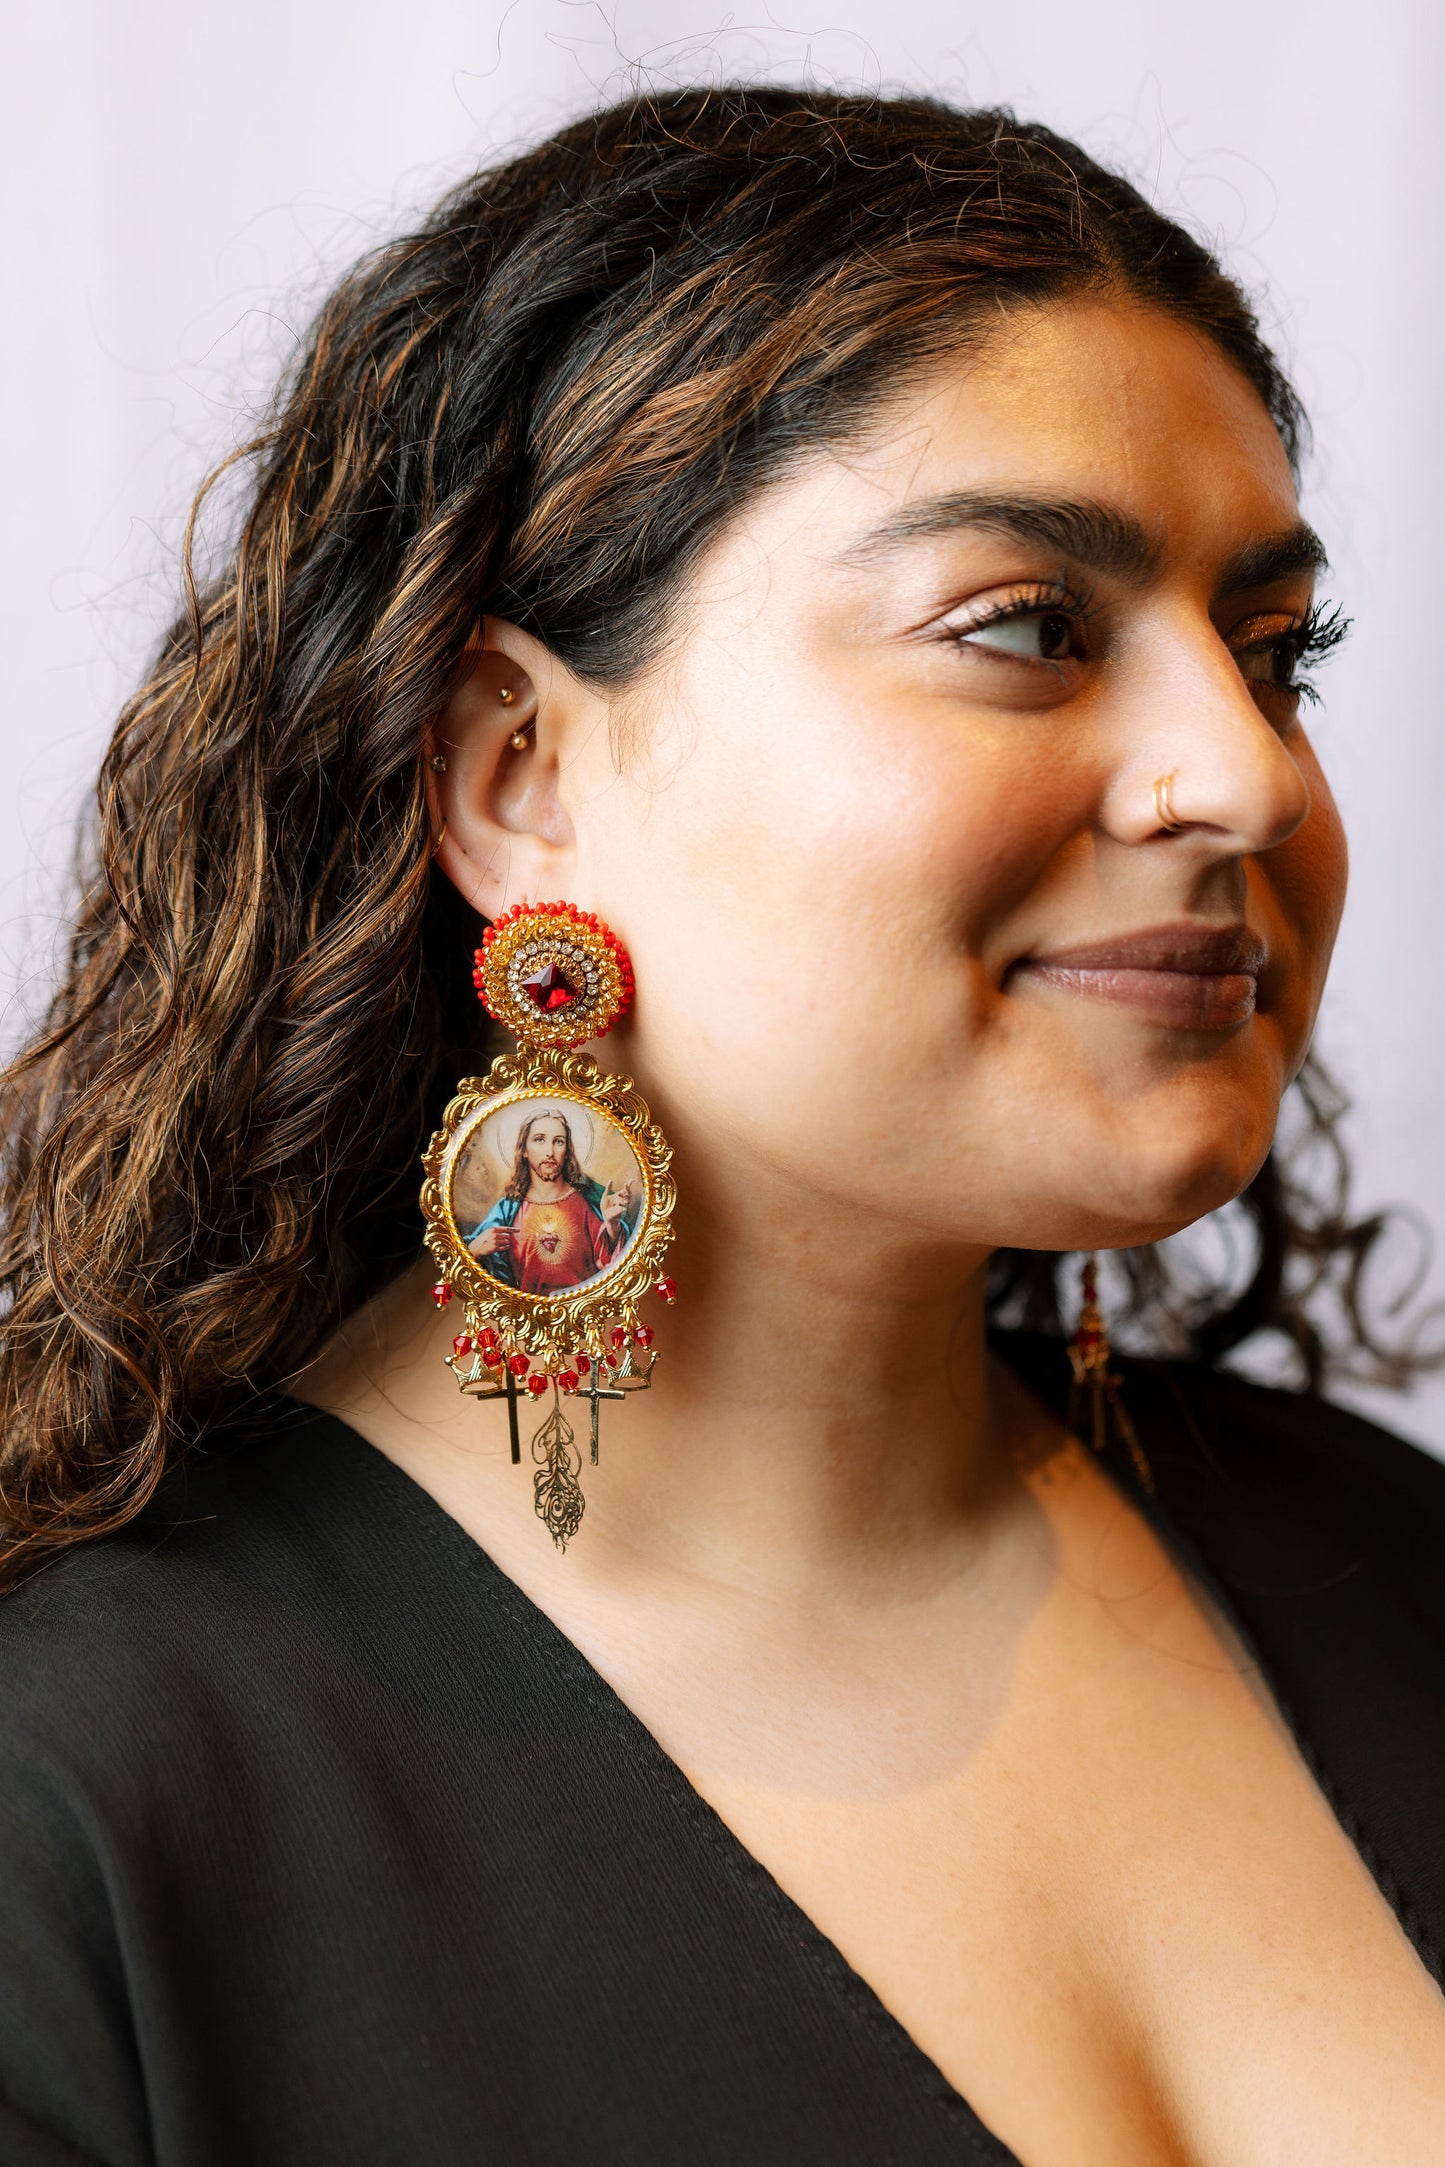 Traditional Gold Ear Cuff Earrings Designs - Dhanalakshmi Jewellers